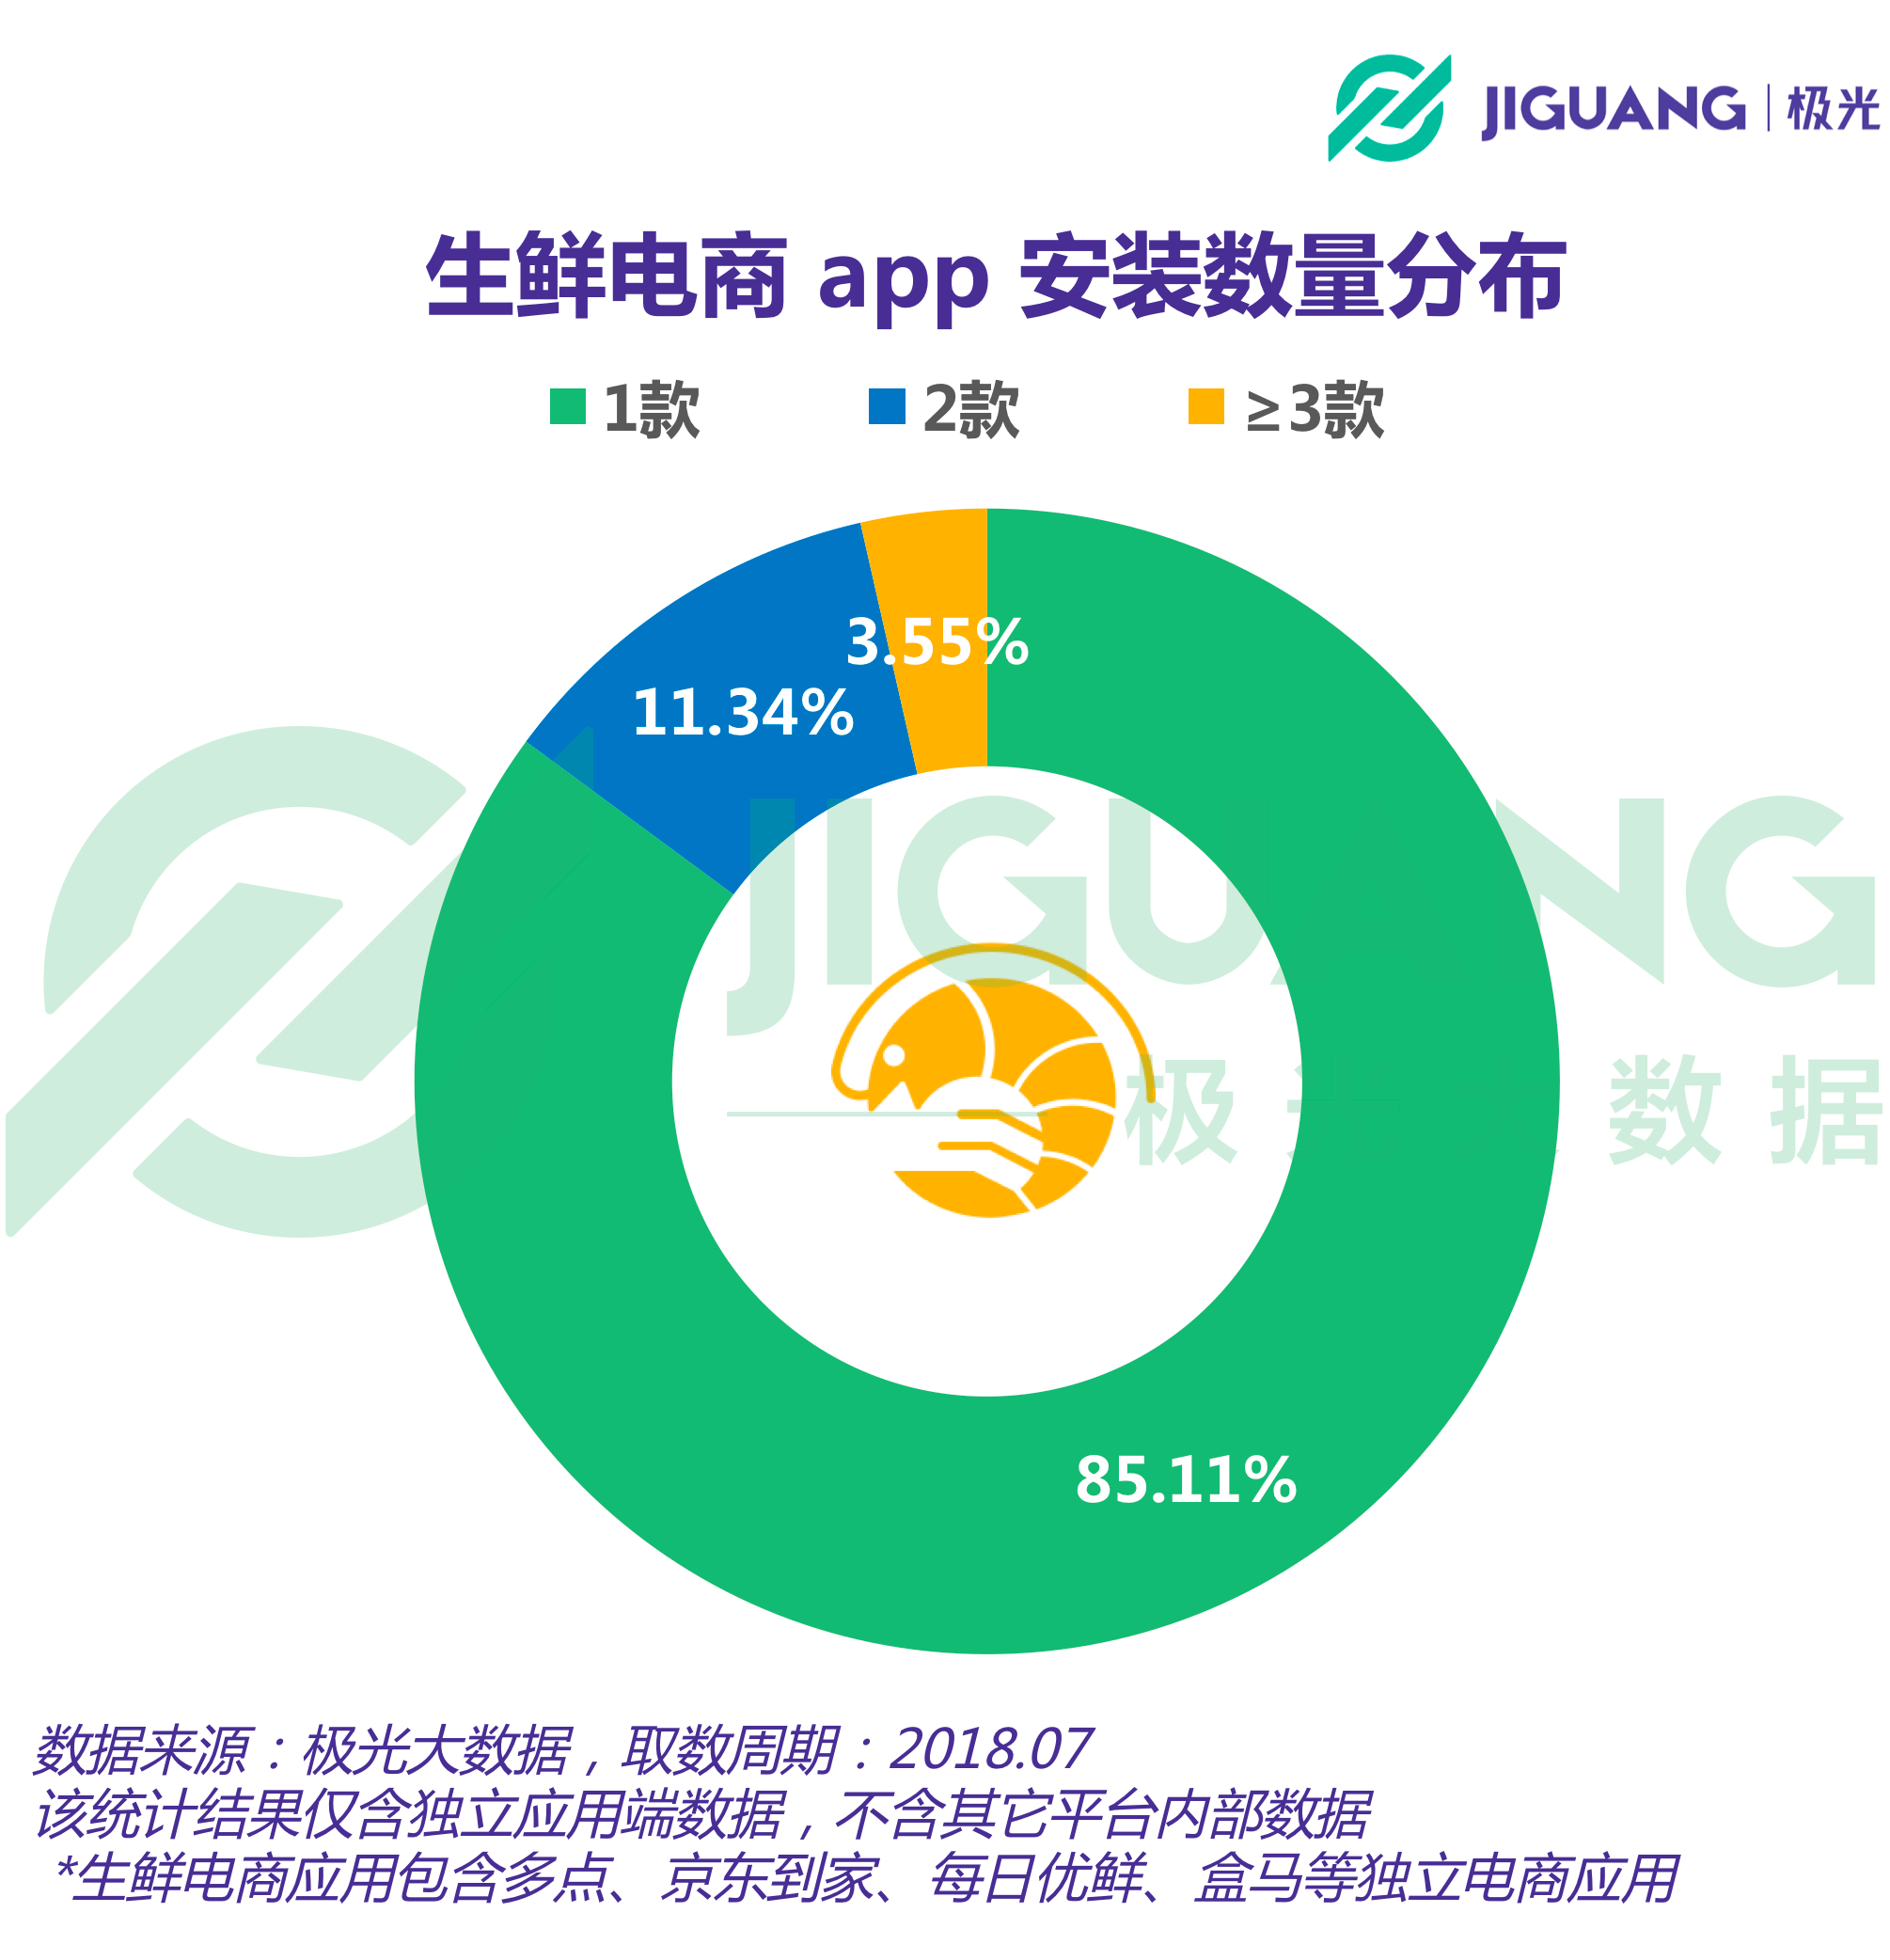 生鲜电商App用户报告：用户超3700万，一线城市占比呈下降趋势